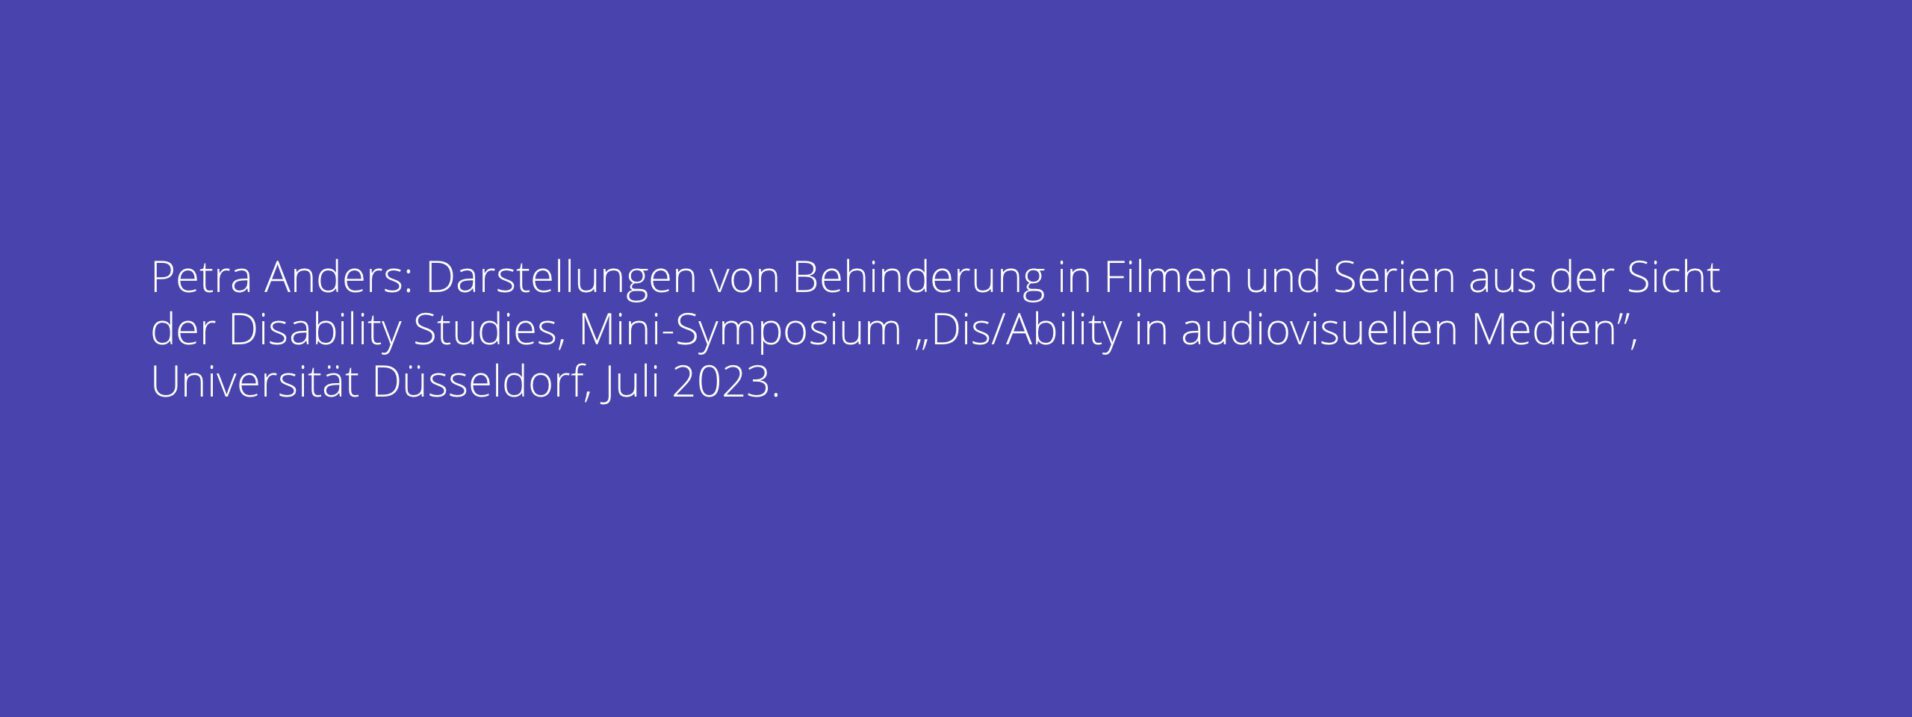 Petra Anders: Darstellungen von Behinderung in Filmen und Serien aus der Sicht der Disability Studies, Mini-Symposium „Dis/Ability in audiovisuellen Medien”, Universität Düsseldorf, Juli 2023.